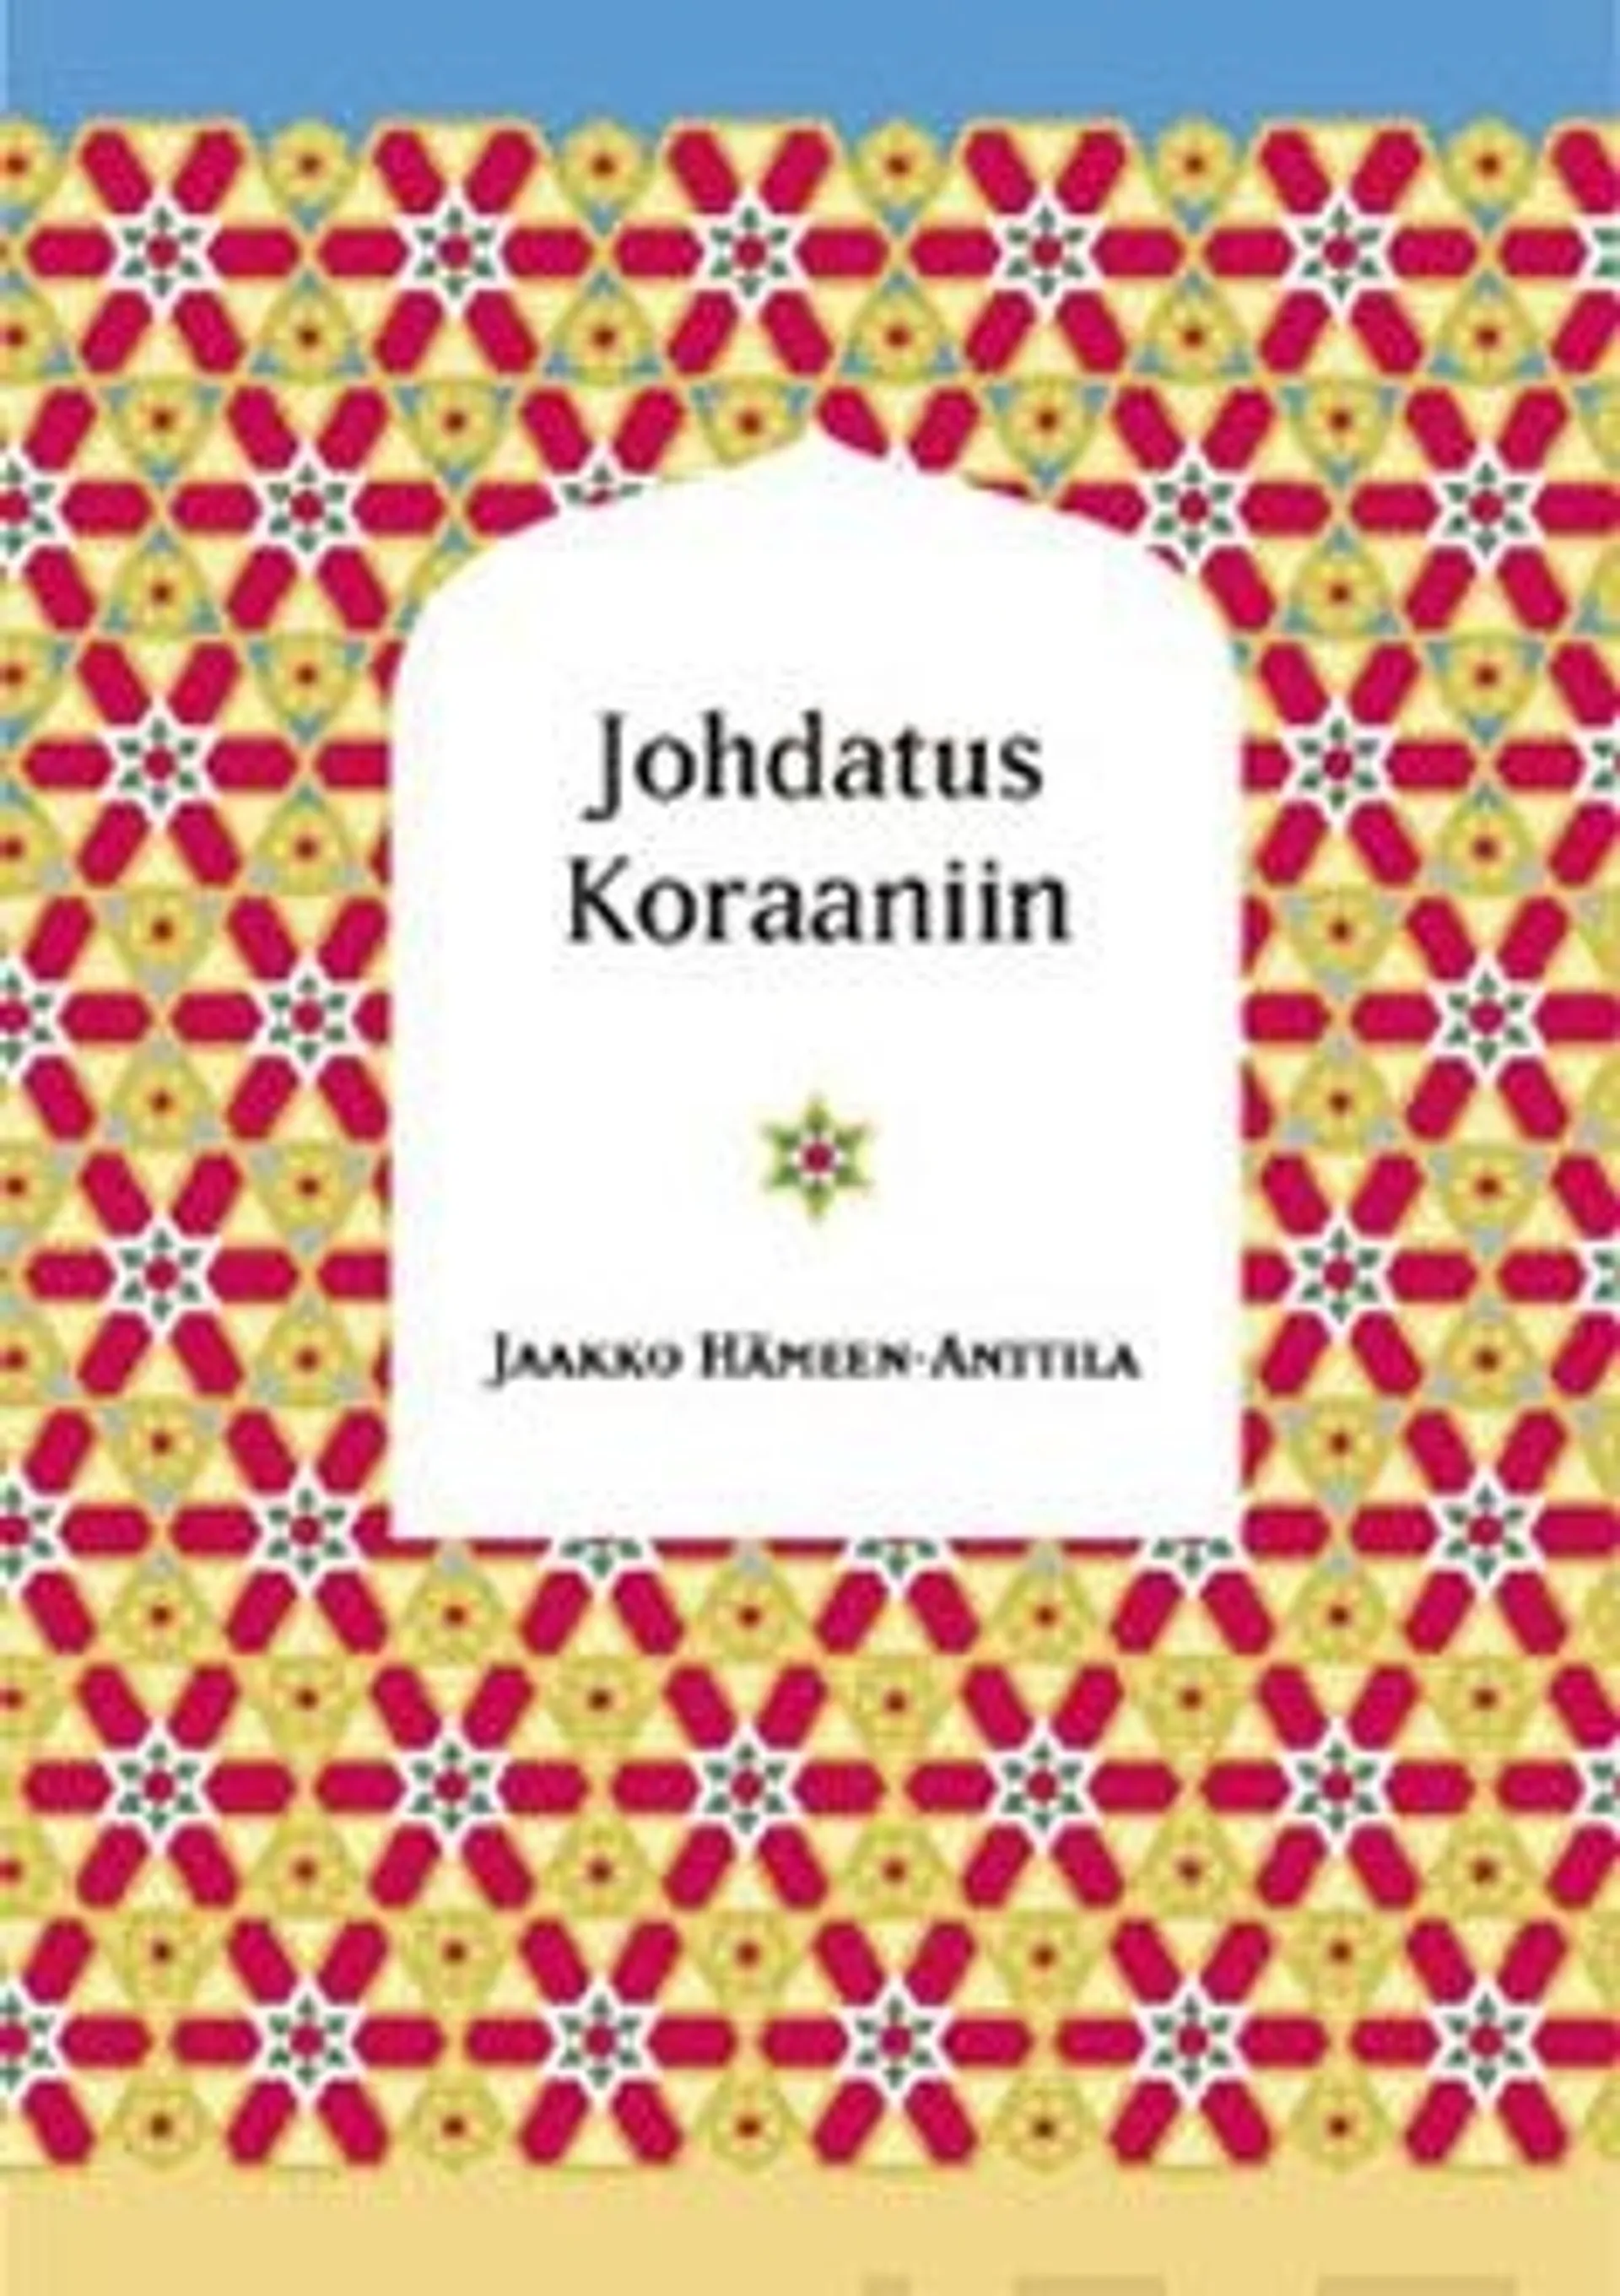 Hämeen-Anttila, Johdatus Koraaniin